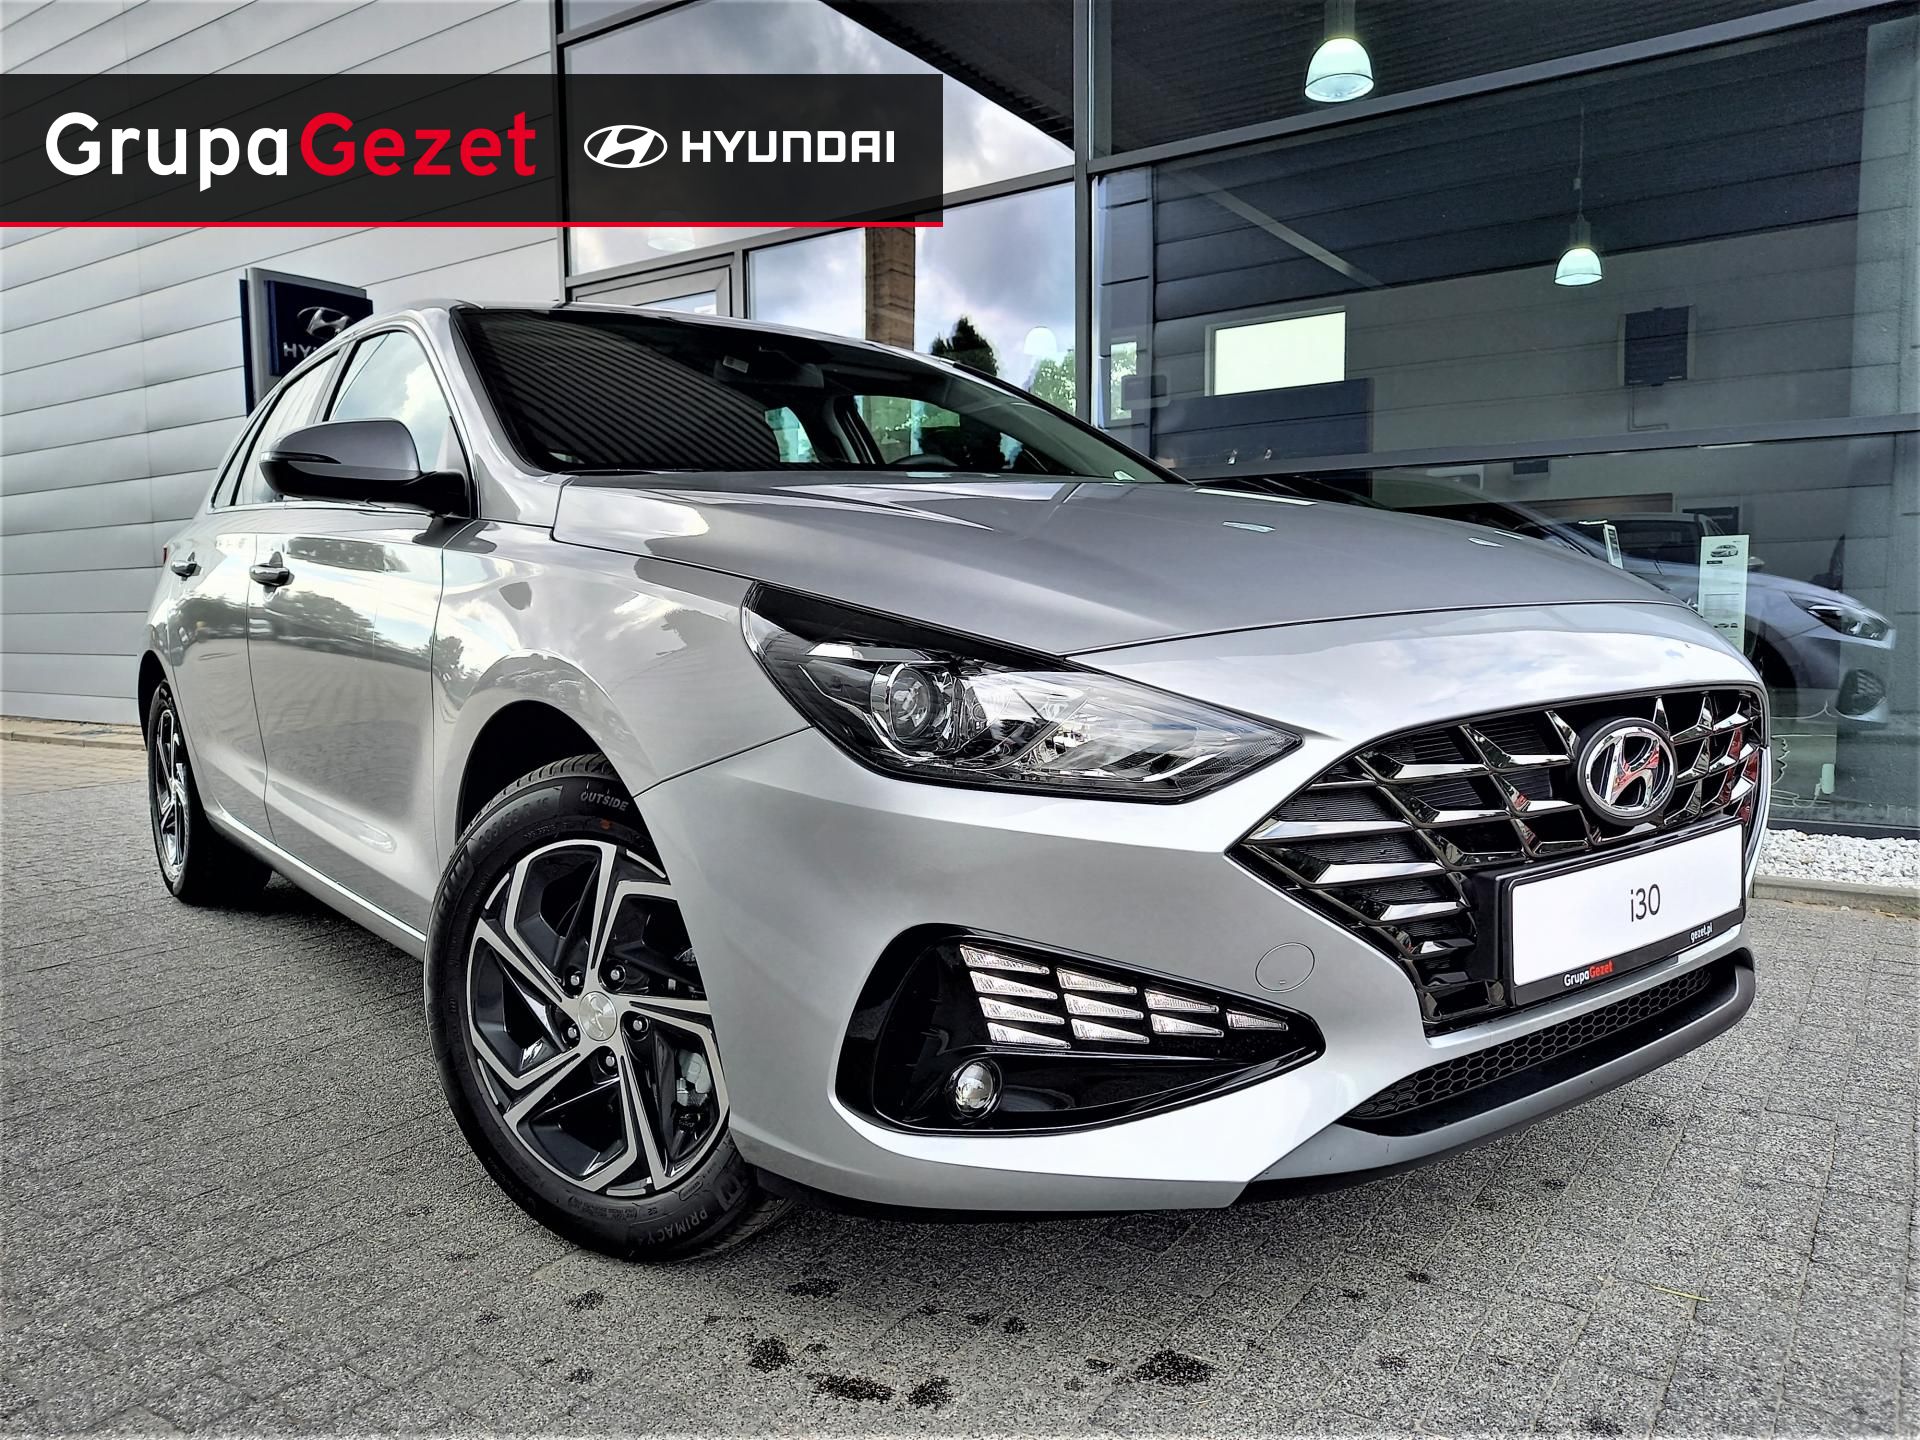 Hyundai I30 1.5Dpi 110Km Pakiet Winter! | Kolor: Srebrny ✰ Samochody - Nowe I Używane Z Gwarancją ✰ Grupa Gezet